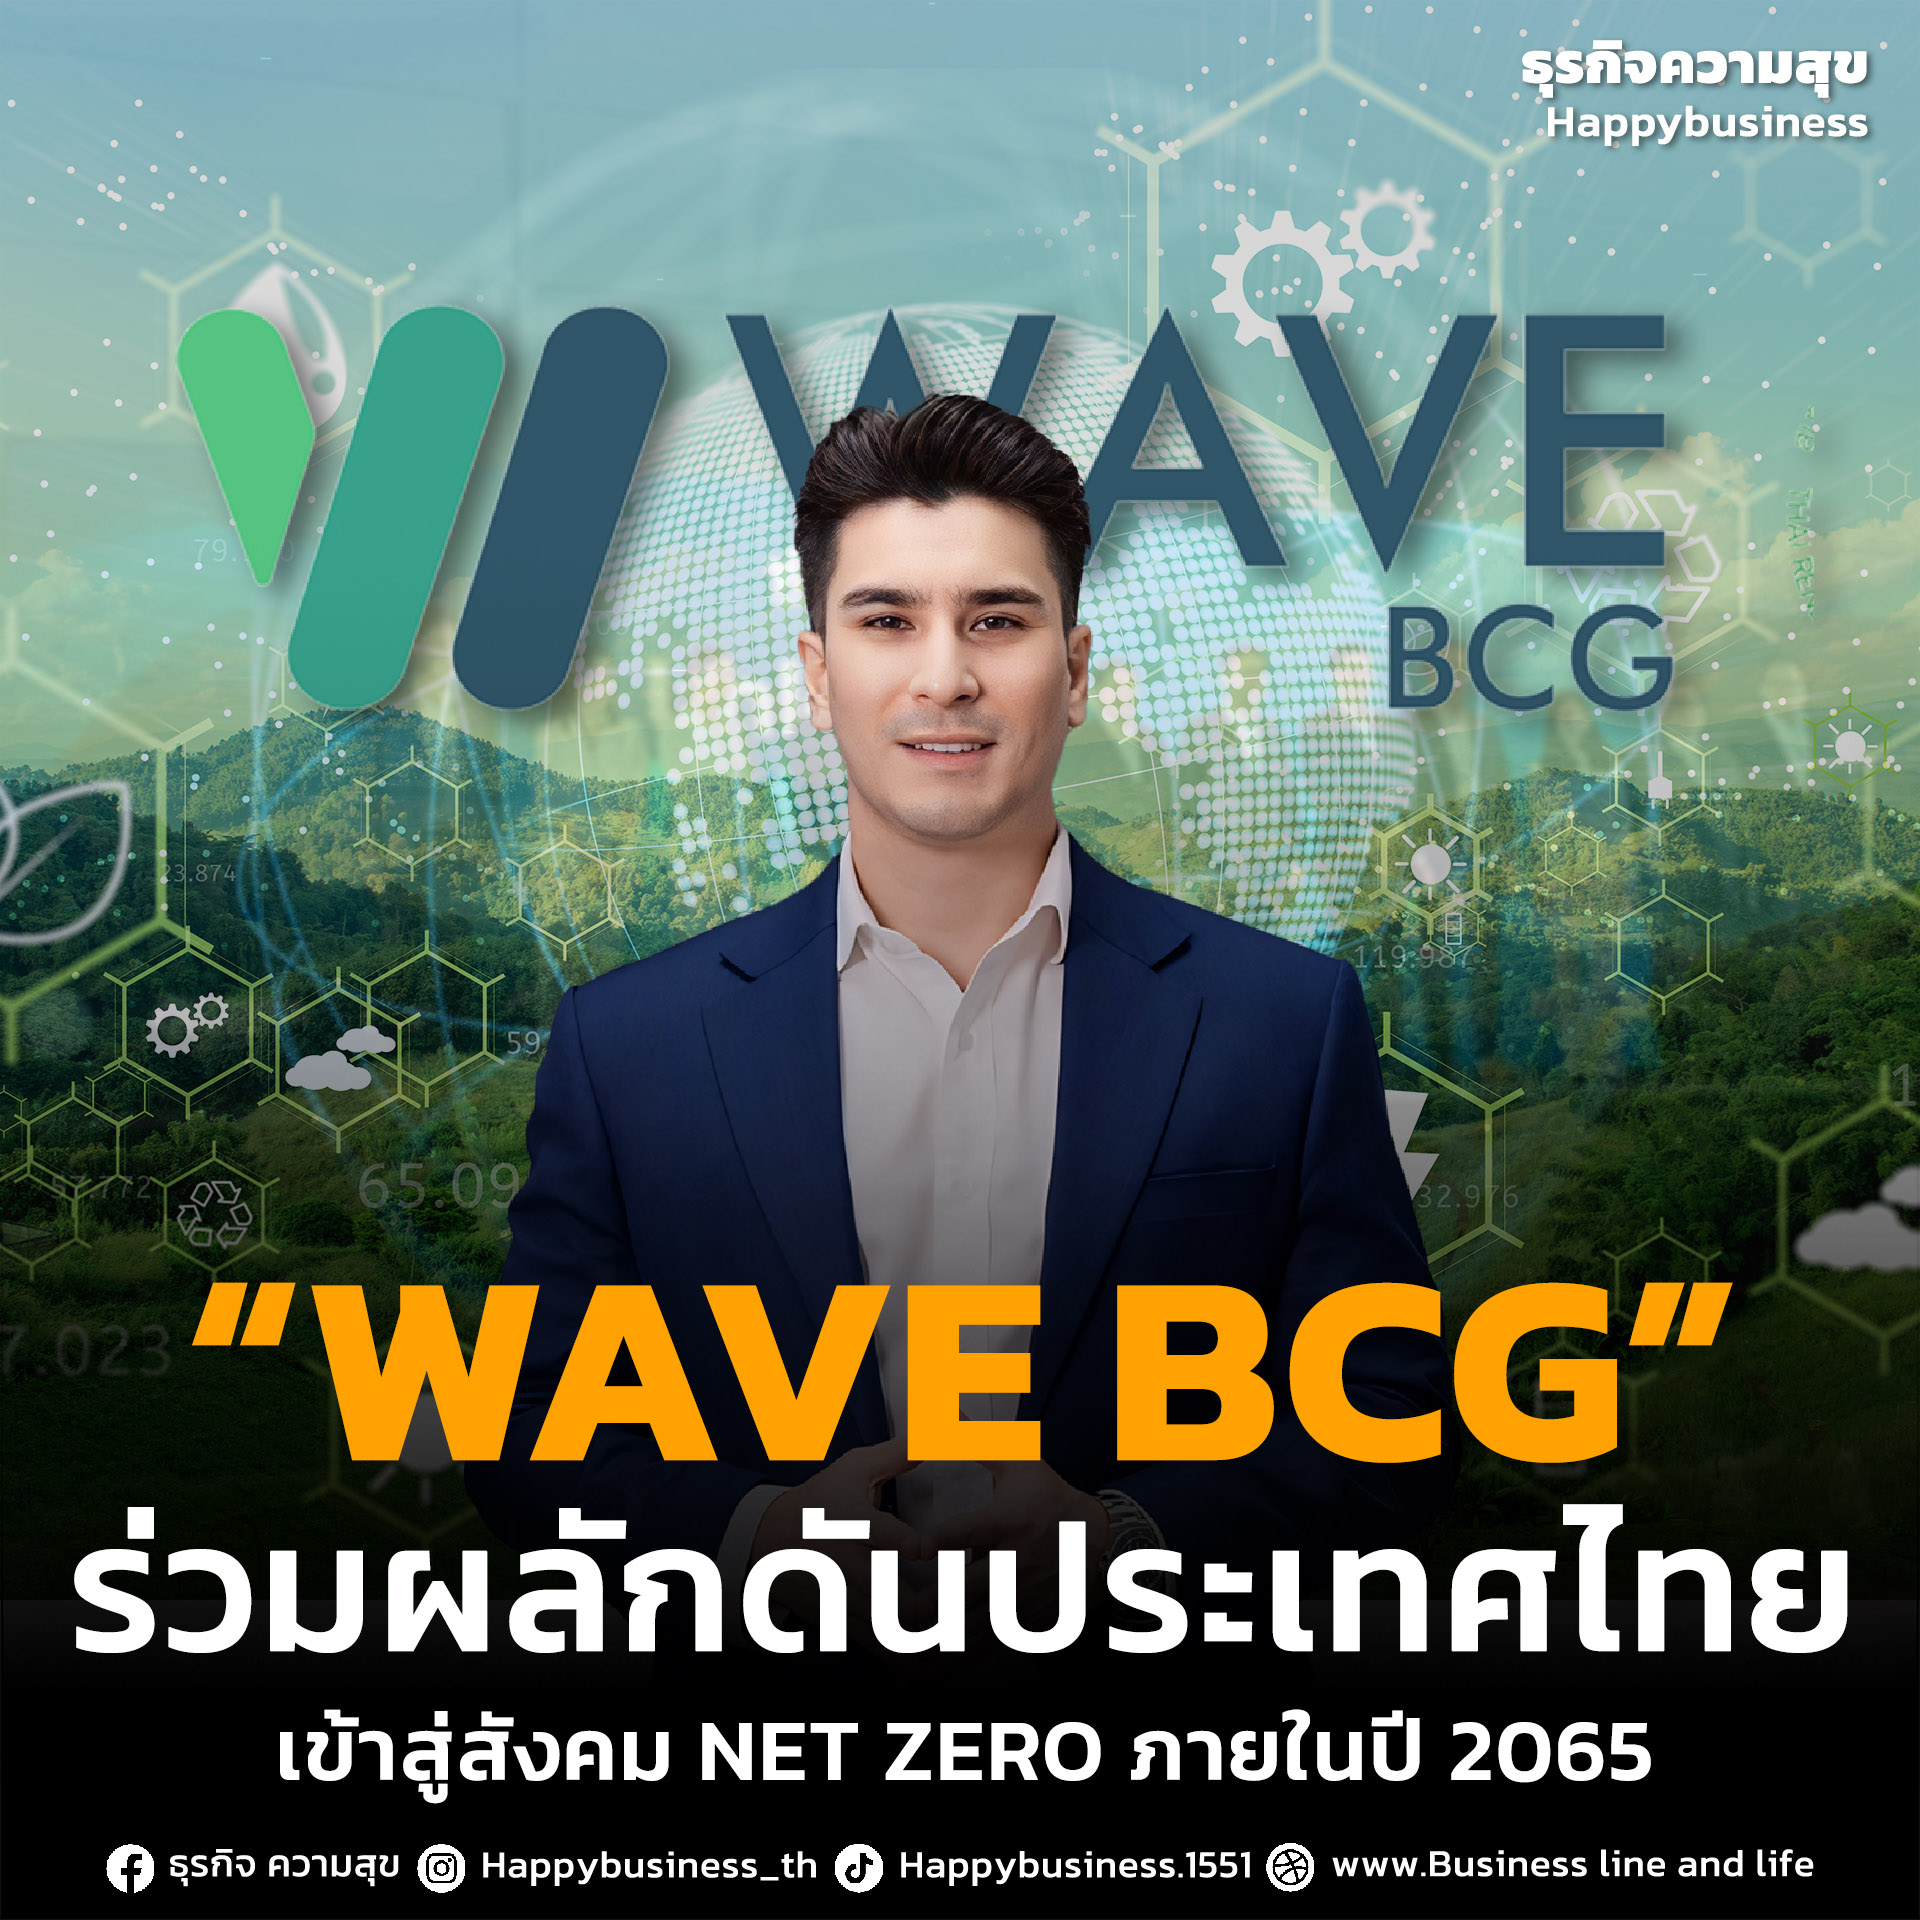 WAVE BCG ร่วมผลักดันประเทศไทย NET ZERO ภายในปี 2065